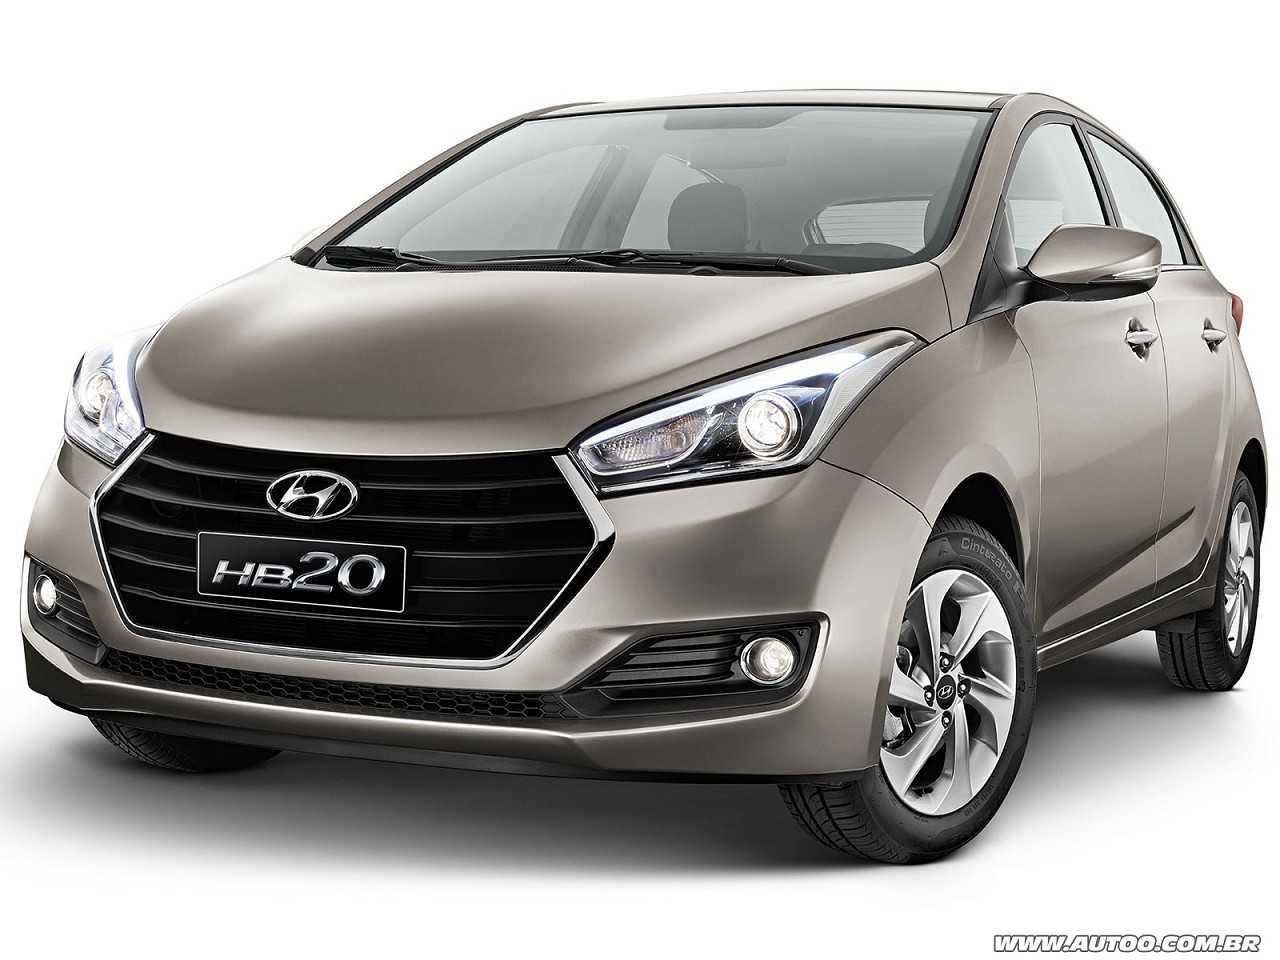 Hyundai Hb20 2017: Carros usados, seminovos e novos